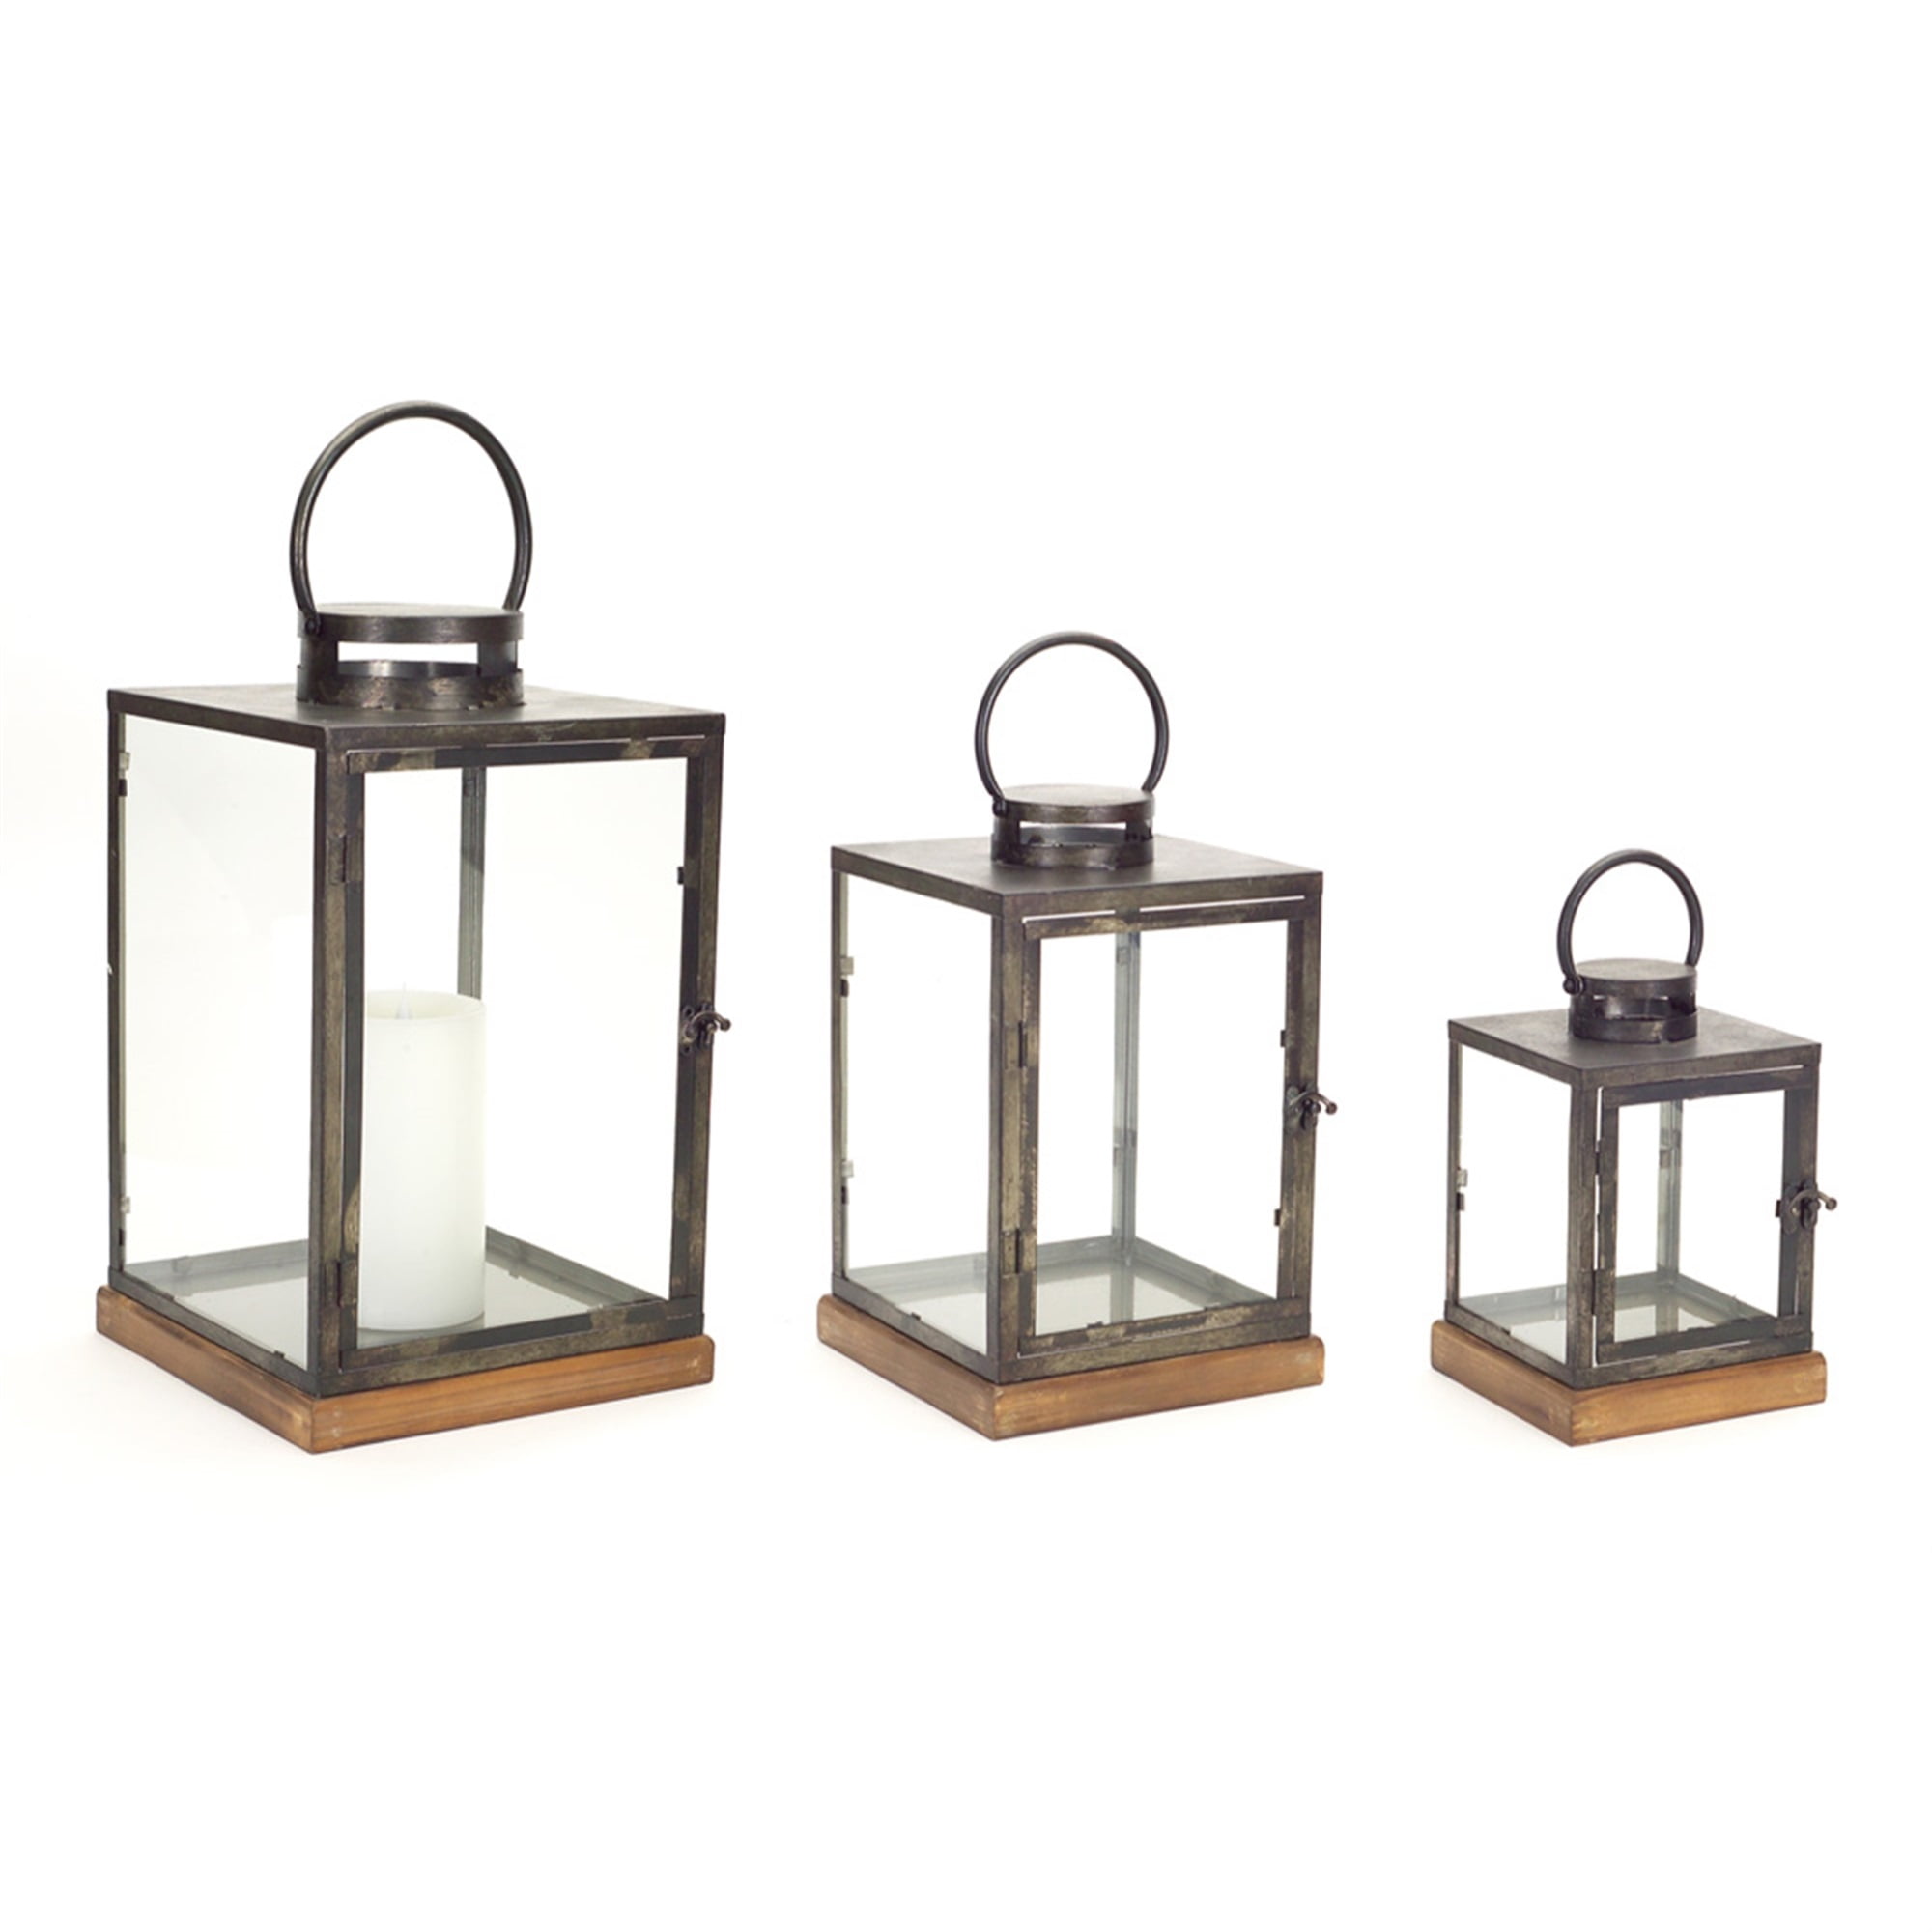 Lanterns (Set of 3) 12"H, 16.5"H, 21.5"H Metal/Glass/Wood